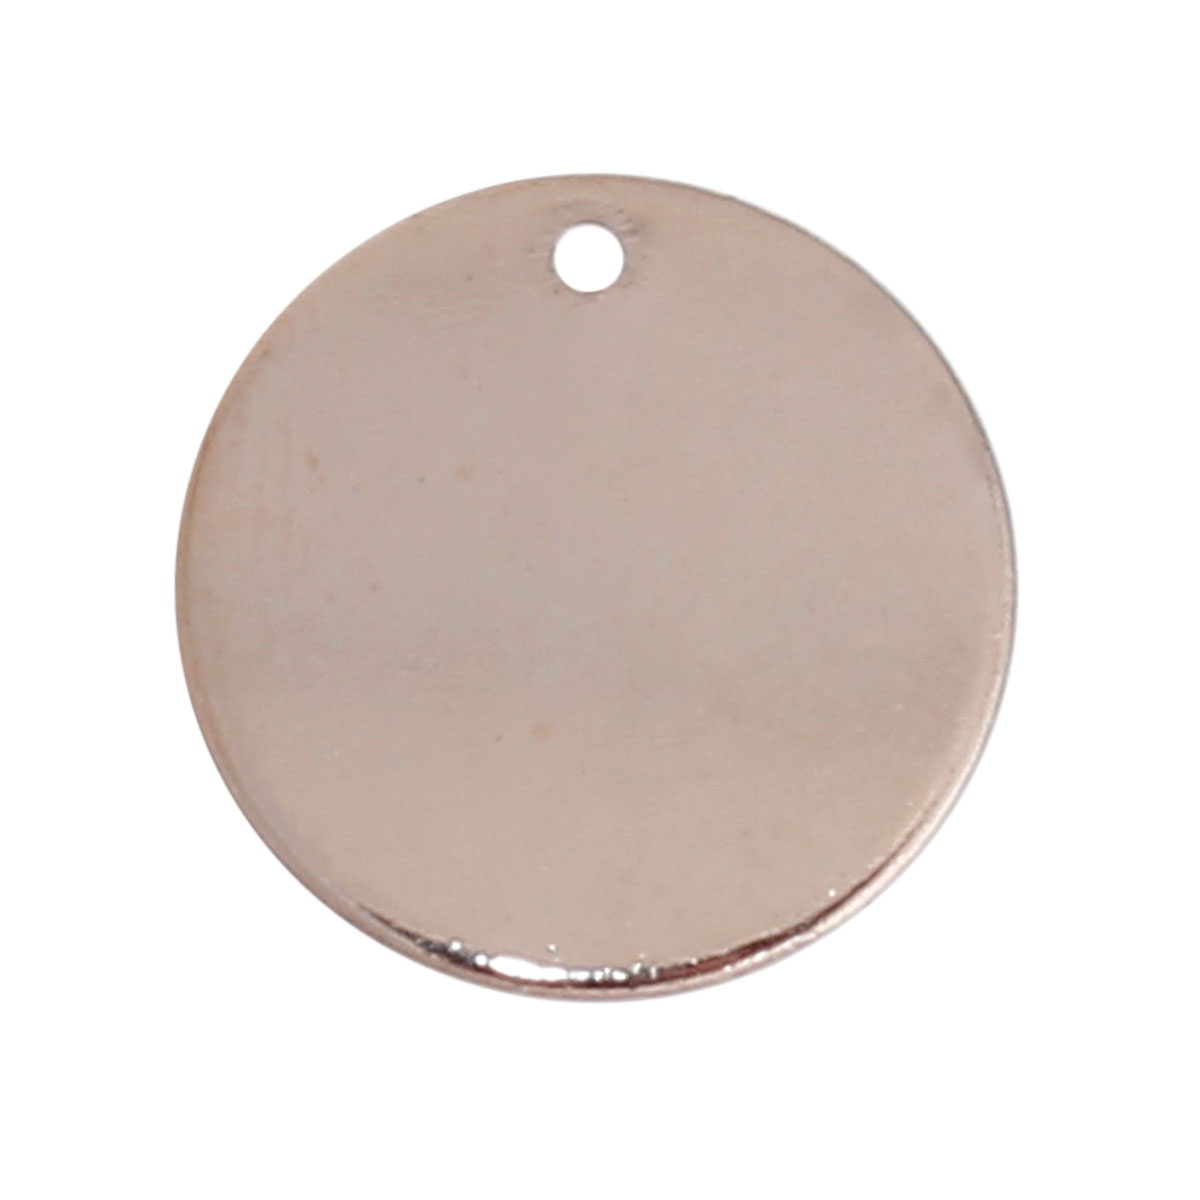 Une breloque ronde en cuivre couleur or rose, 15mm de diamètre